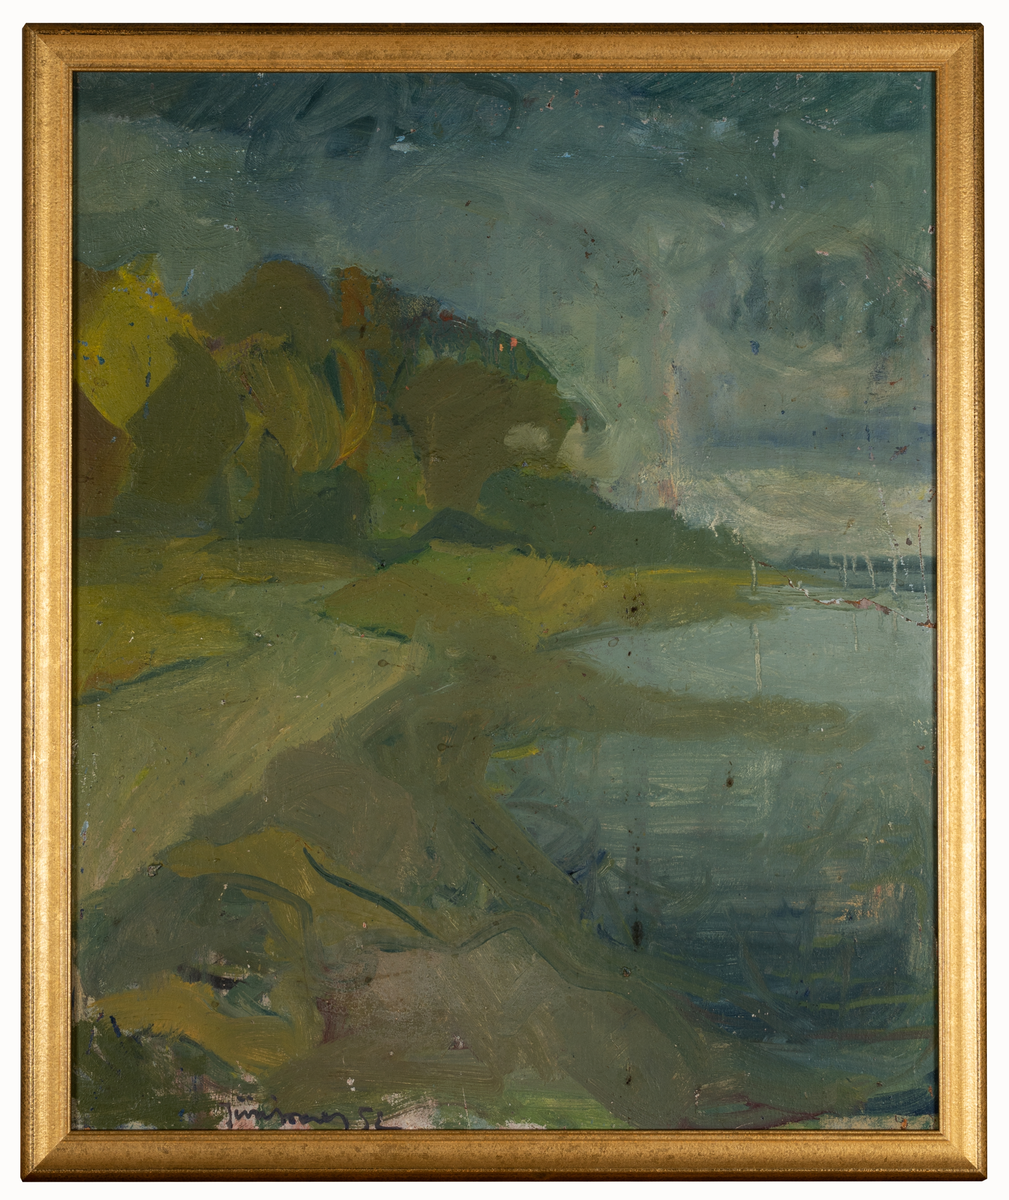 Landskap med vatten eller sjö till höger i lätt abstrakt stil. Målad av Harald Jürissaar 1952.